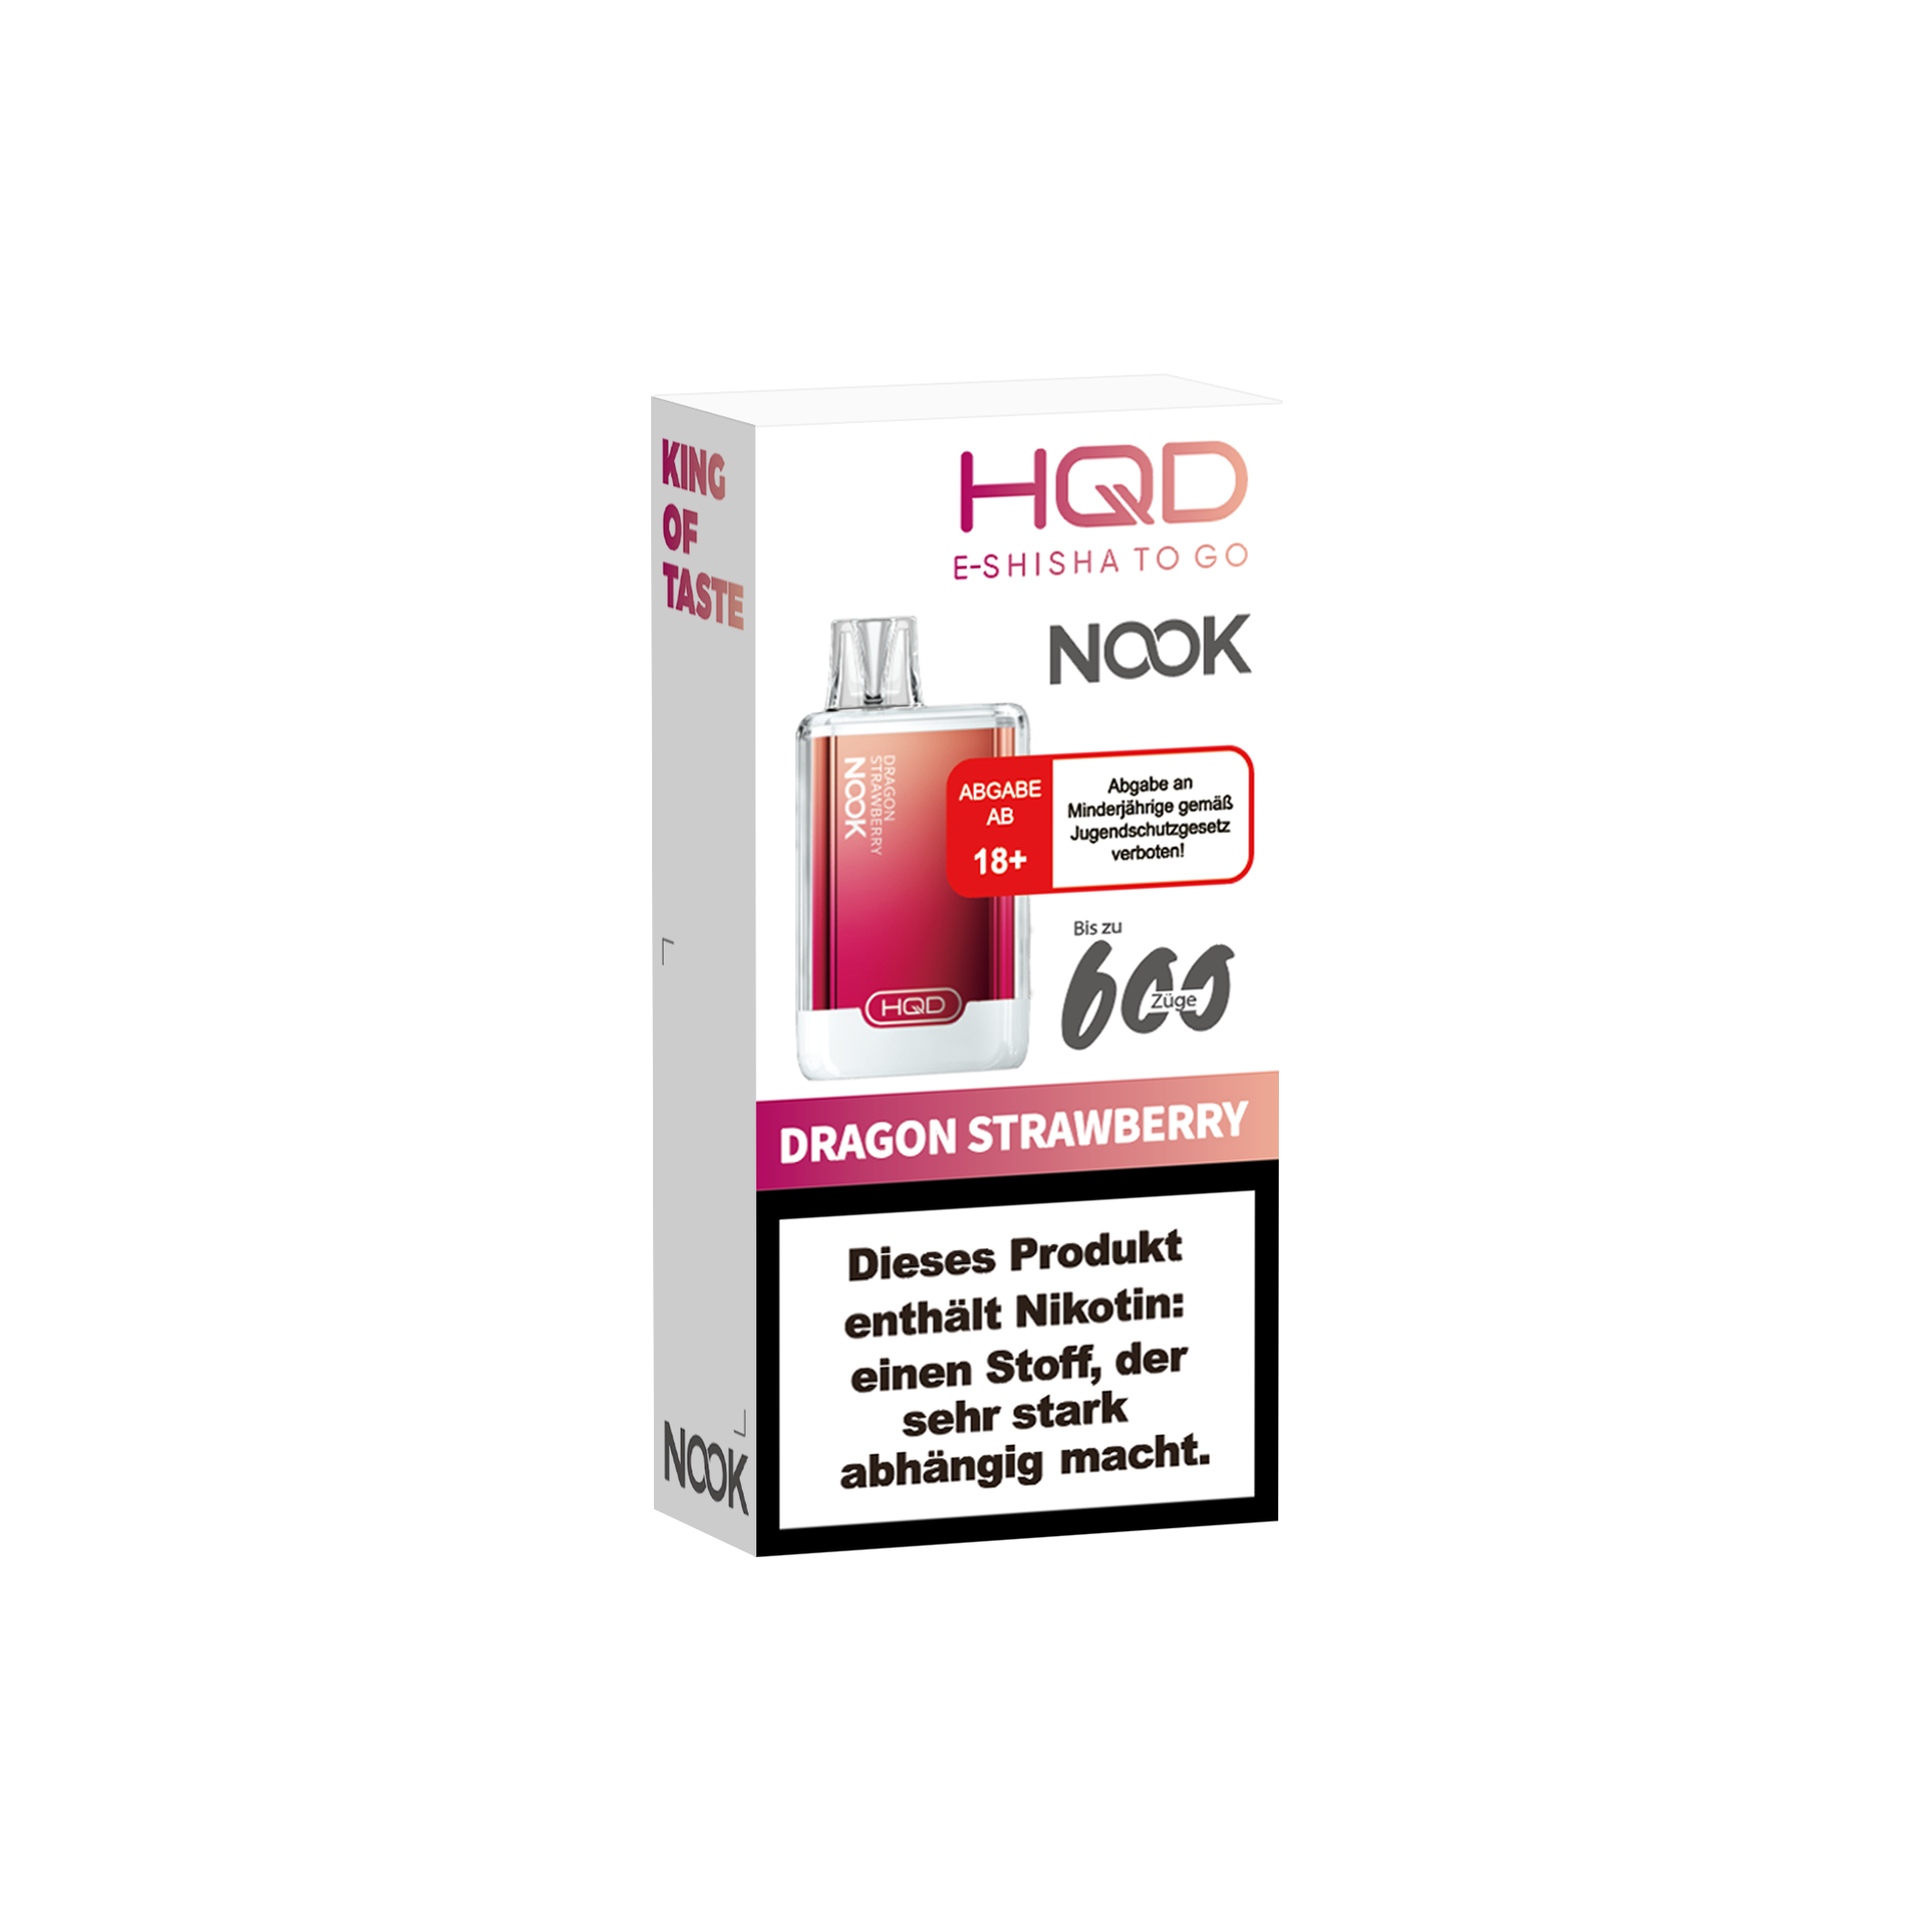 E-Zigarette HQD Nook DRAGON STRAWBERRY 18mg Nikotin 600